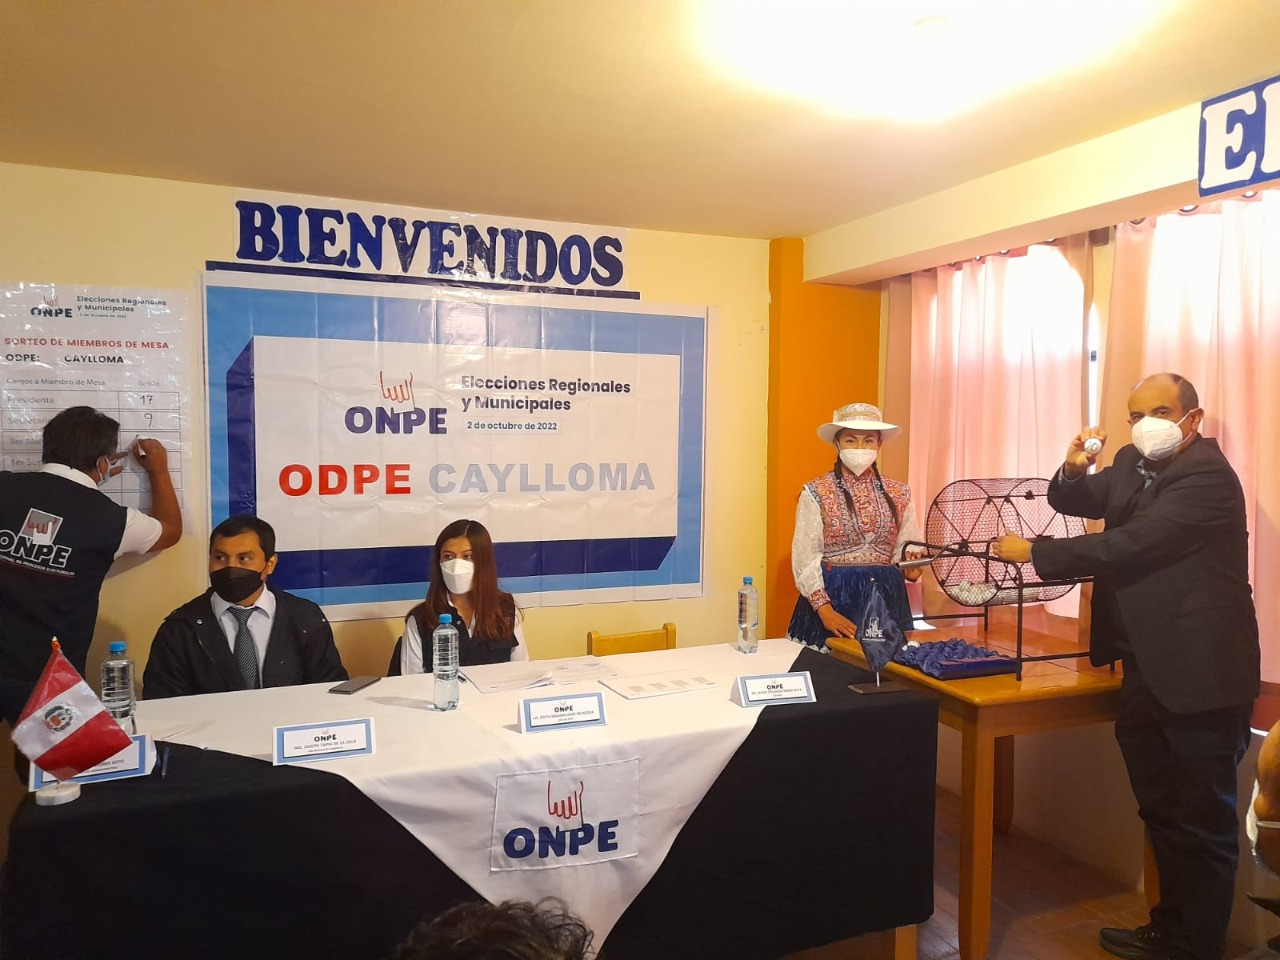 ODPE Caylloma eligió a 1600 miembros de mesa para Elecciones Regionales y Municipales de octubre